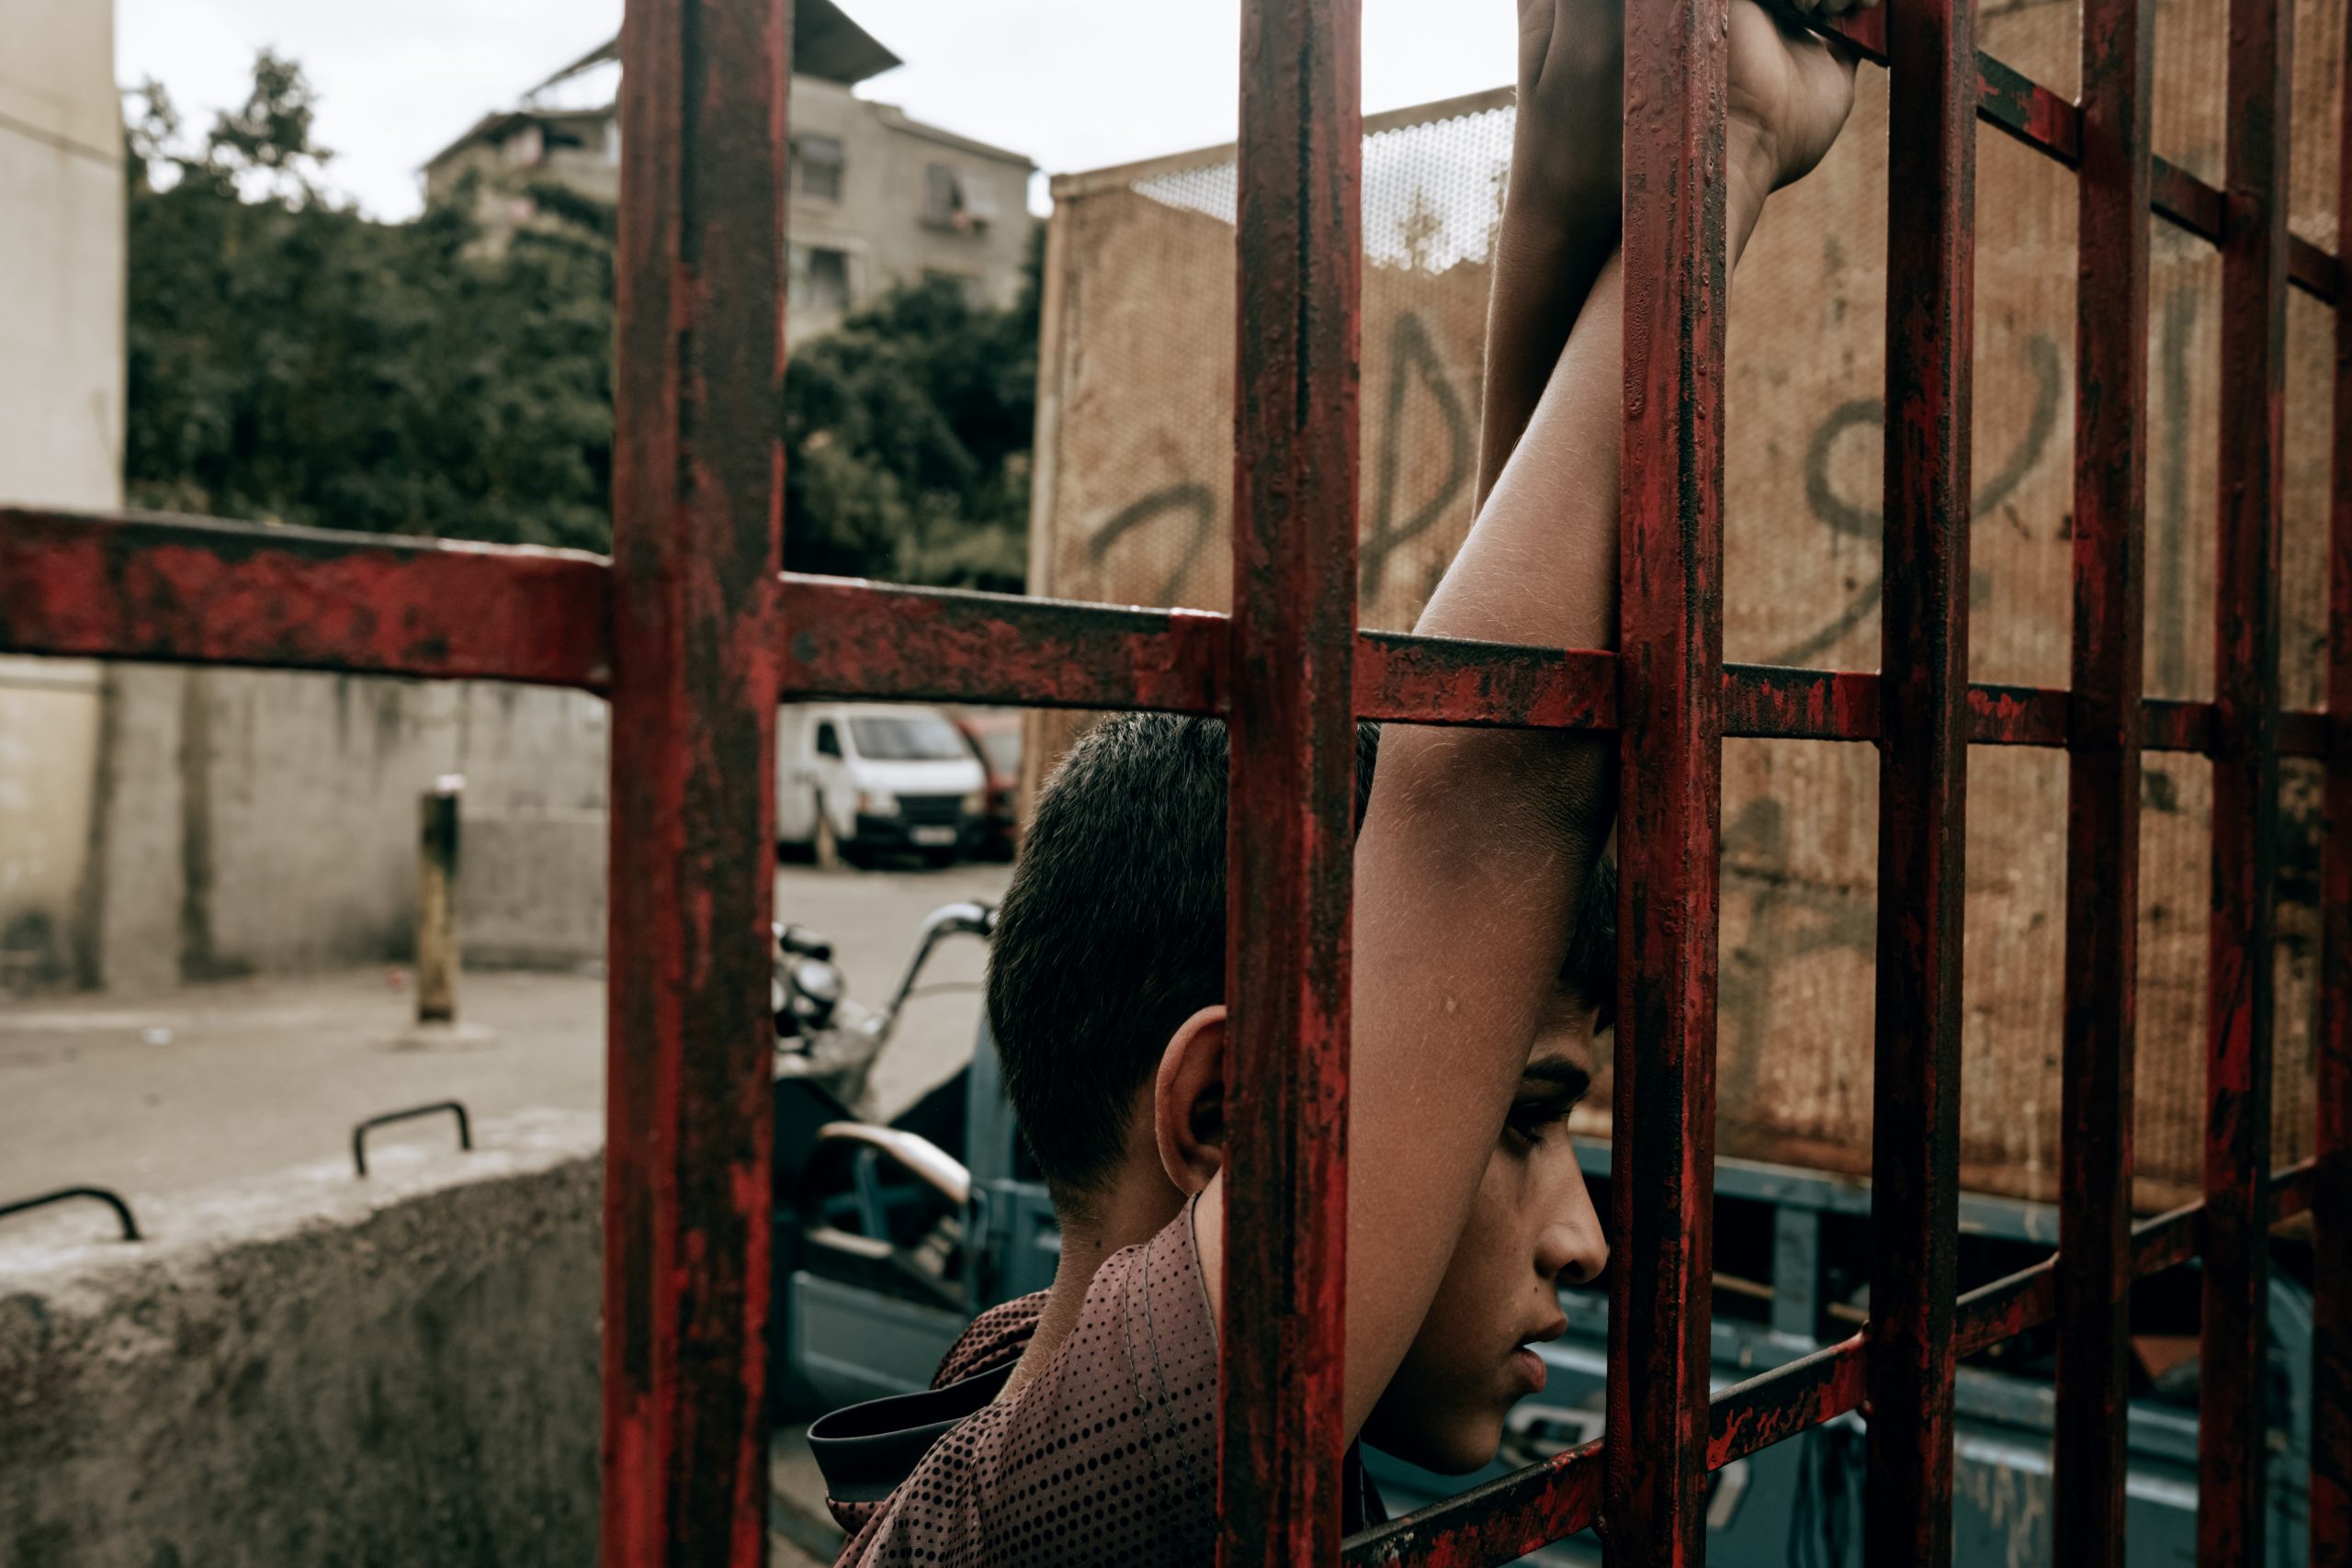 صبي يشاهد مباراة لكرة القدم من خلف قضبان، شاتيلا، بيروت، لبنان، 11 أكتوبر 2020. كارين بيير، وكالة هانز لوكاس، عبر رويترز.